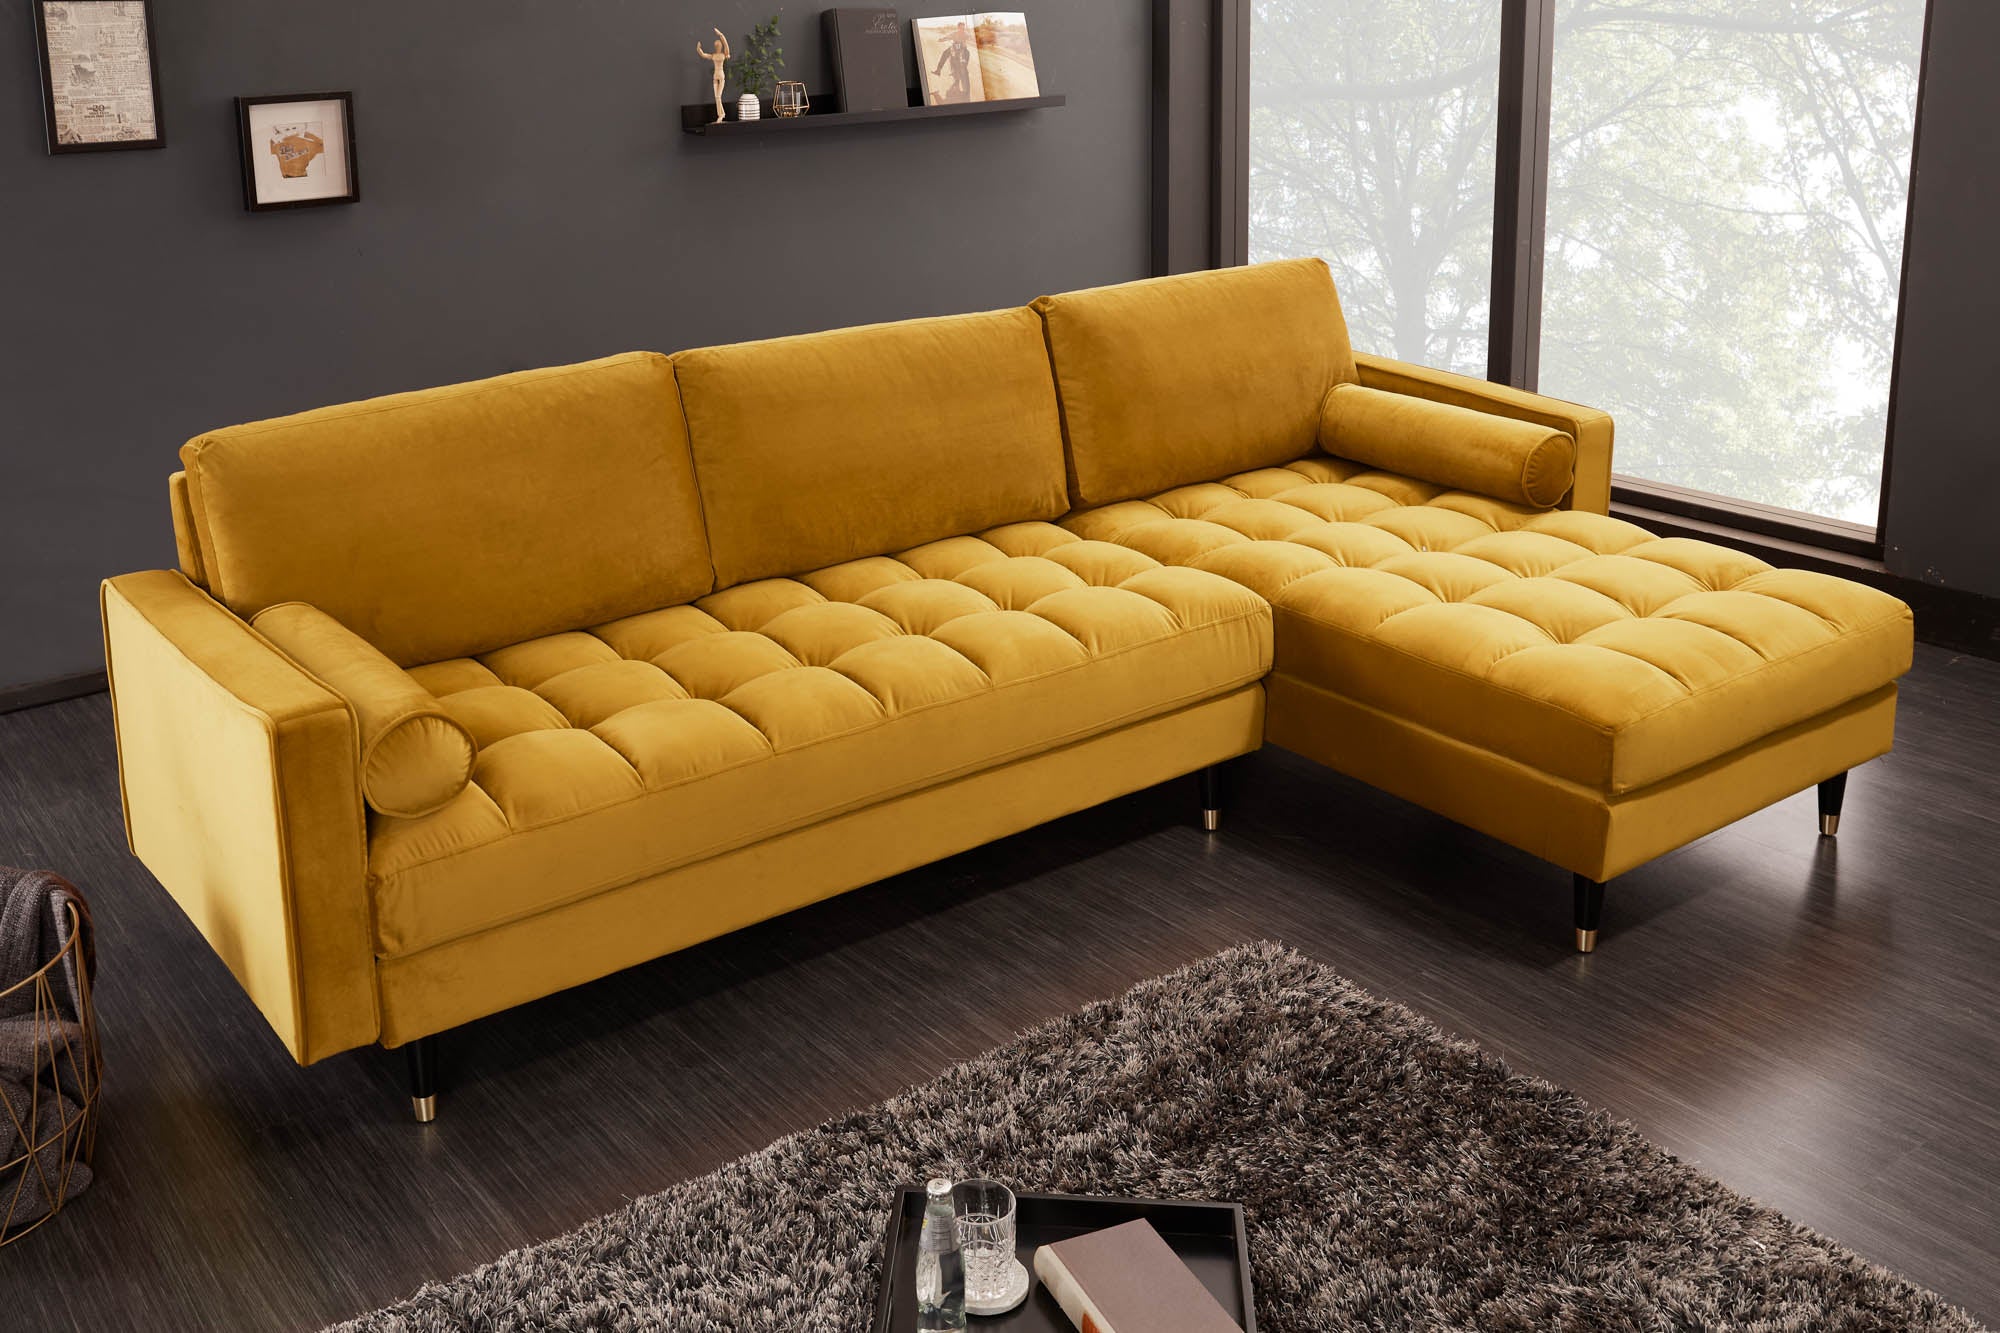 made mustard sofa bed